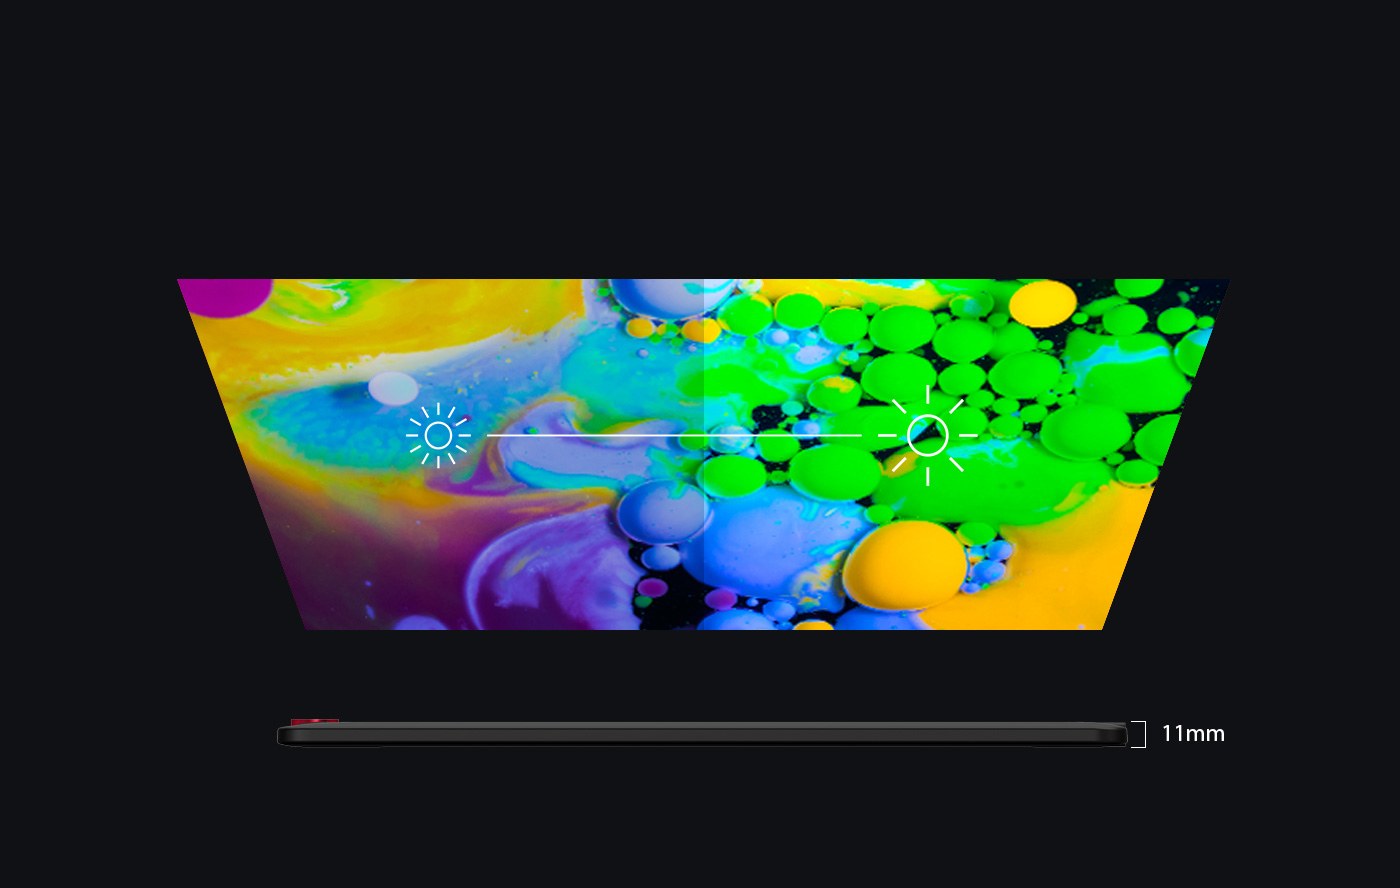 XP-Pen Artist 15.6 Pro tablette graphique portable avec Design élégant et intelligent